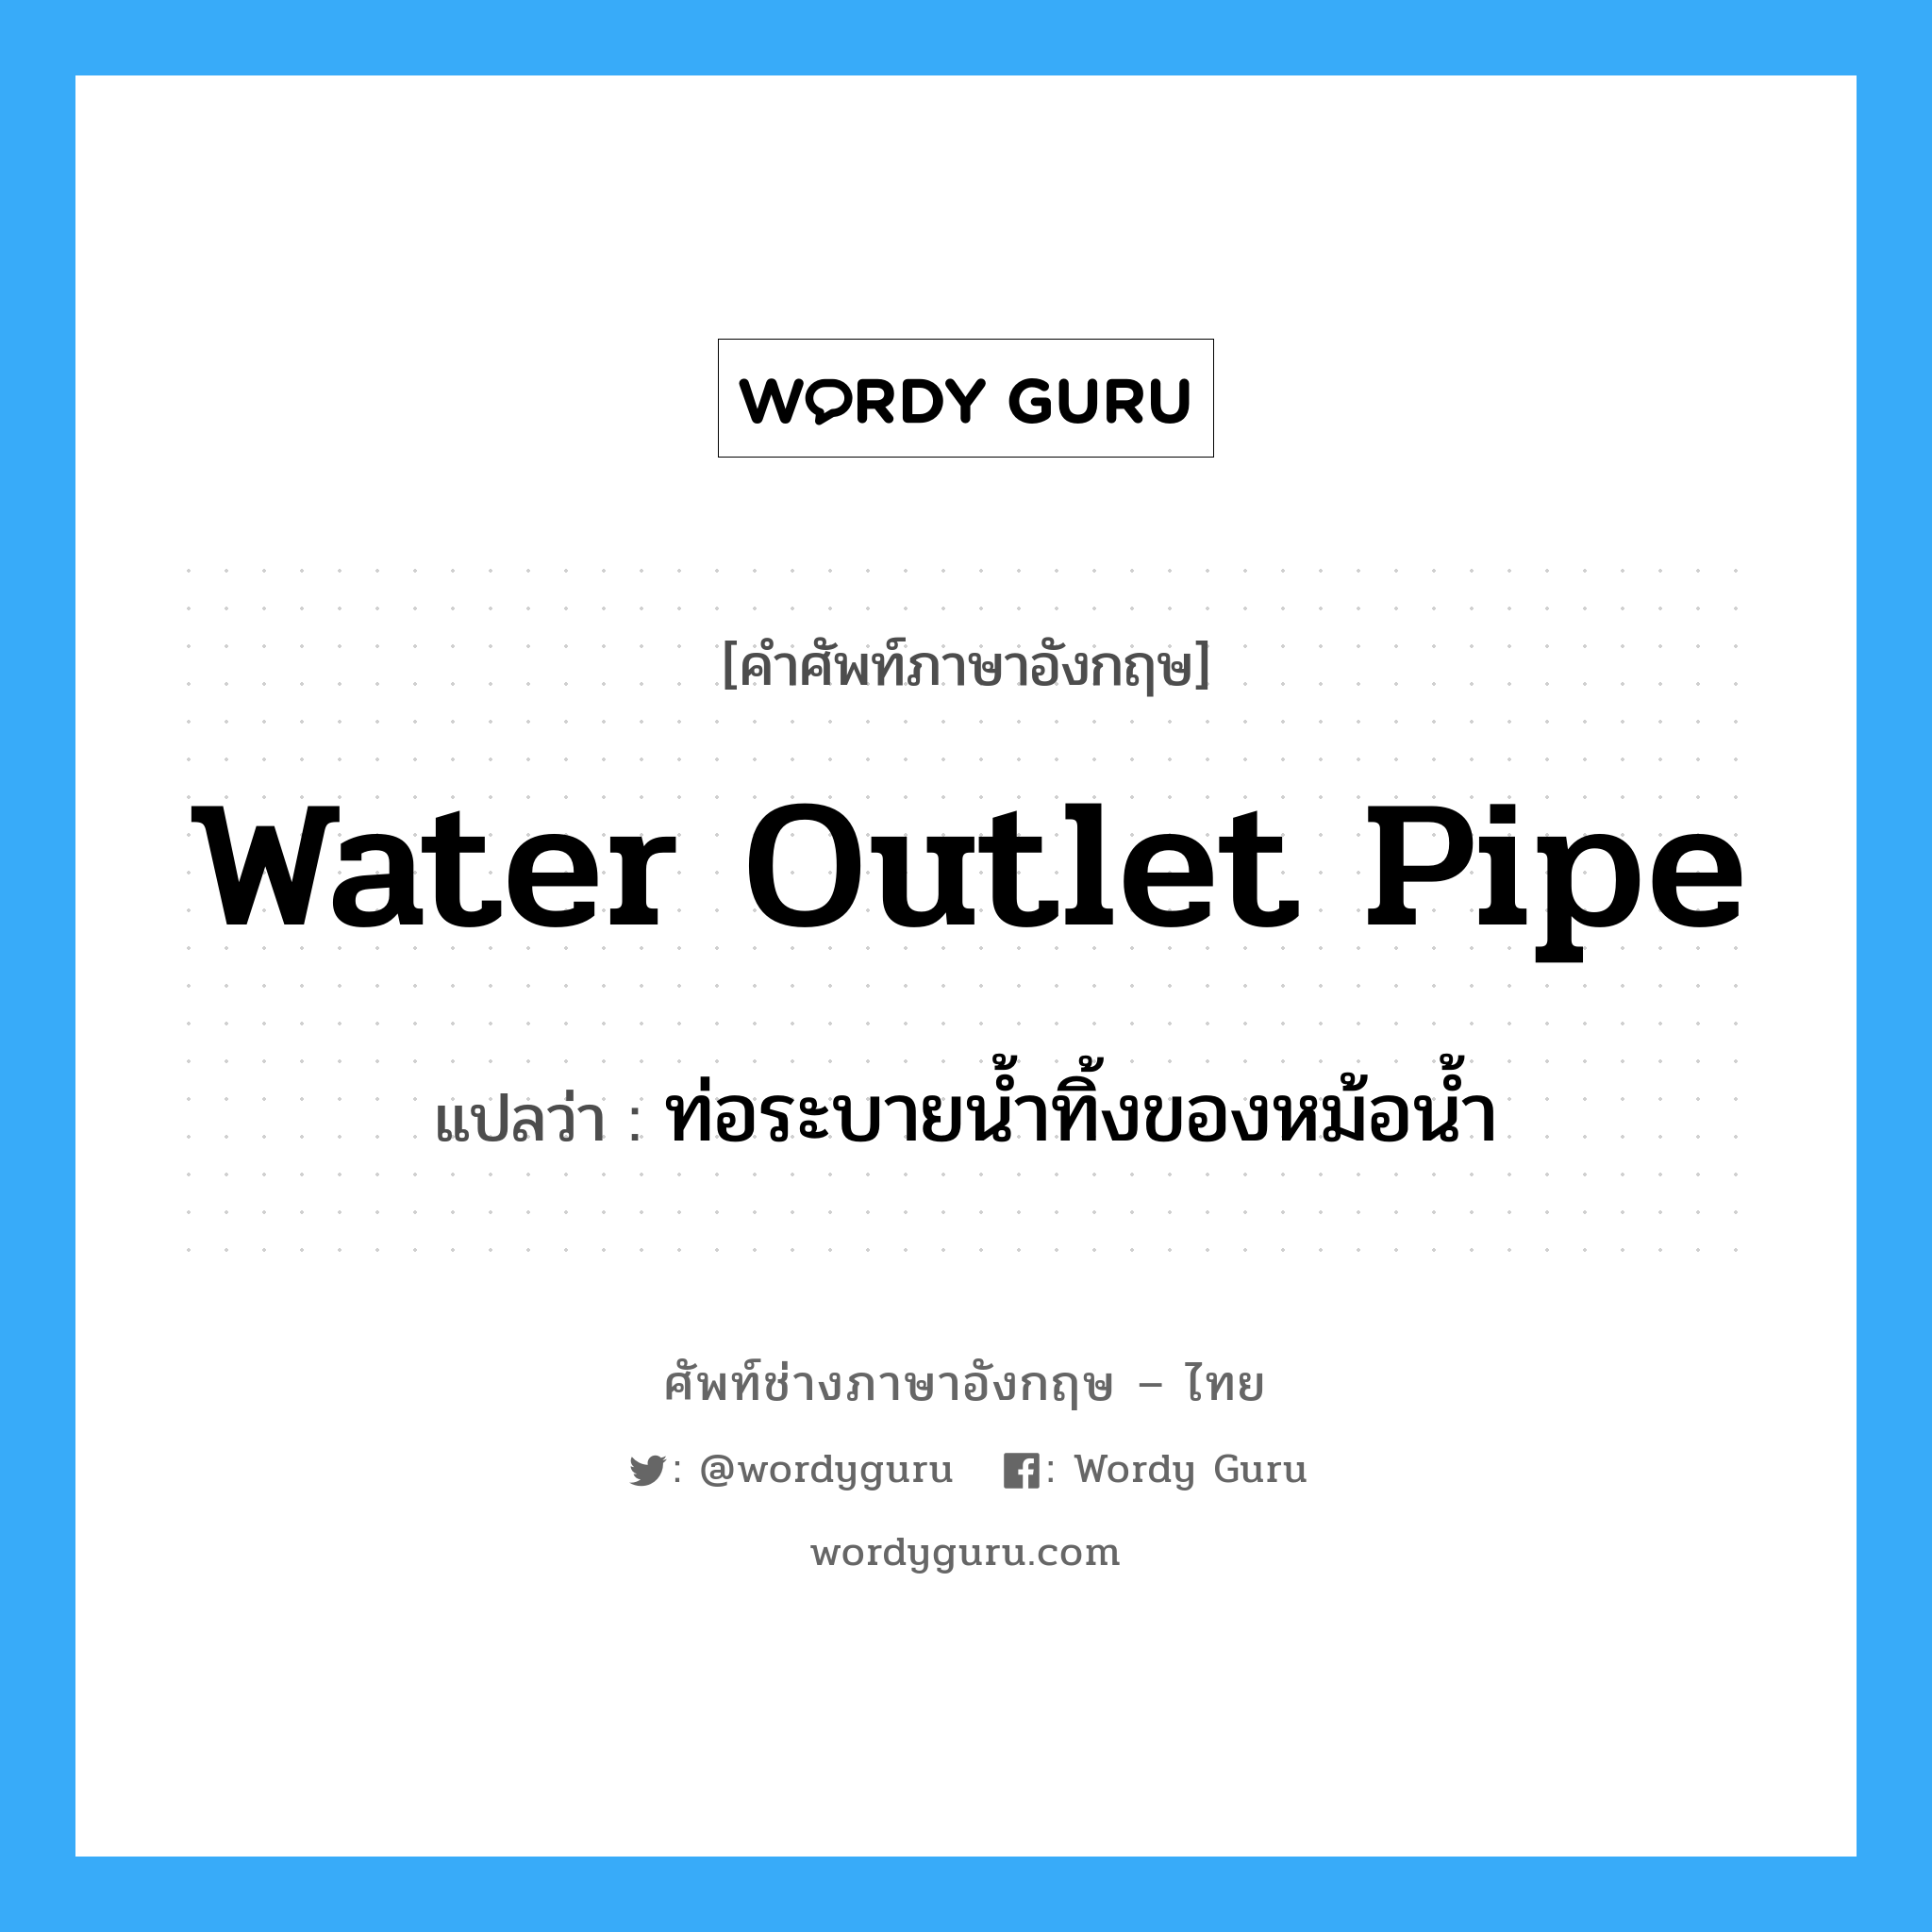 ท่อระบายน้ำทิ้งของหม้อน้ำ ภาษาอังกฤษ?, คำศัพท์ช่างภาษาอังกฤษ - ไทย ท่อระบายน้ำทิ้งของหม้อน้ำ คำศัพท์ภาษาอังกฤษ ท่อระบายน้ำทิ้งของหม้อน้ำ แปลว่า water outlet pipe